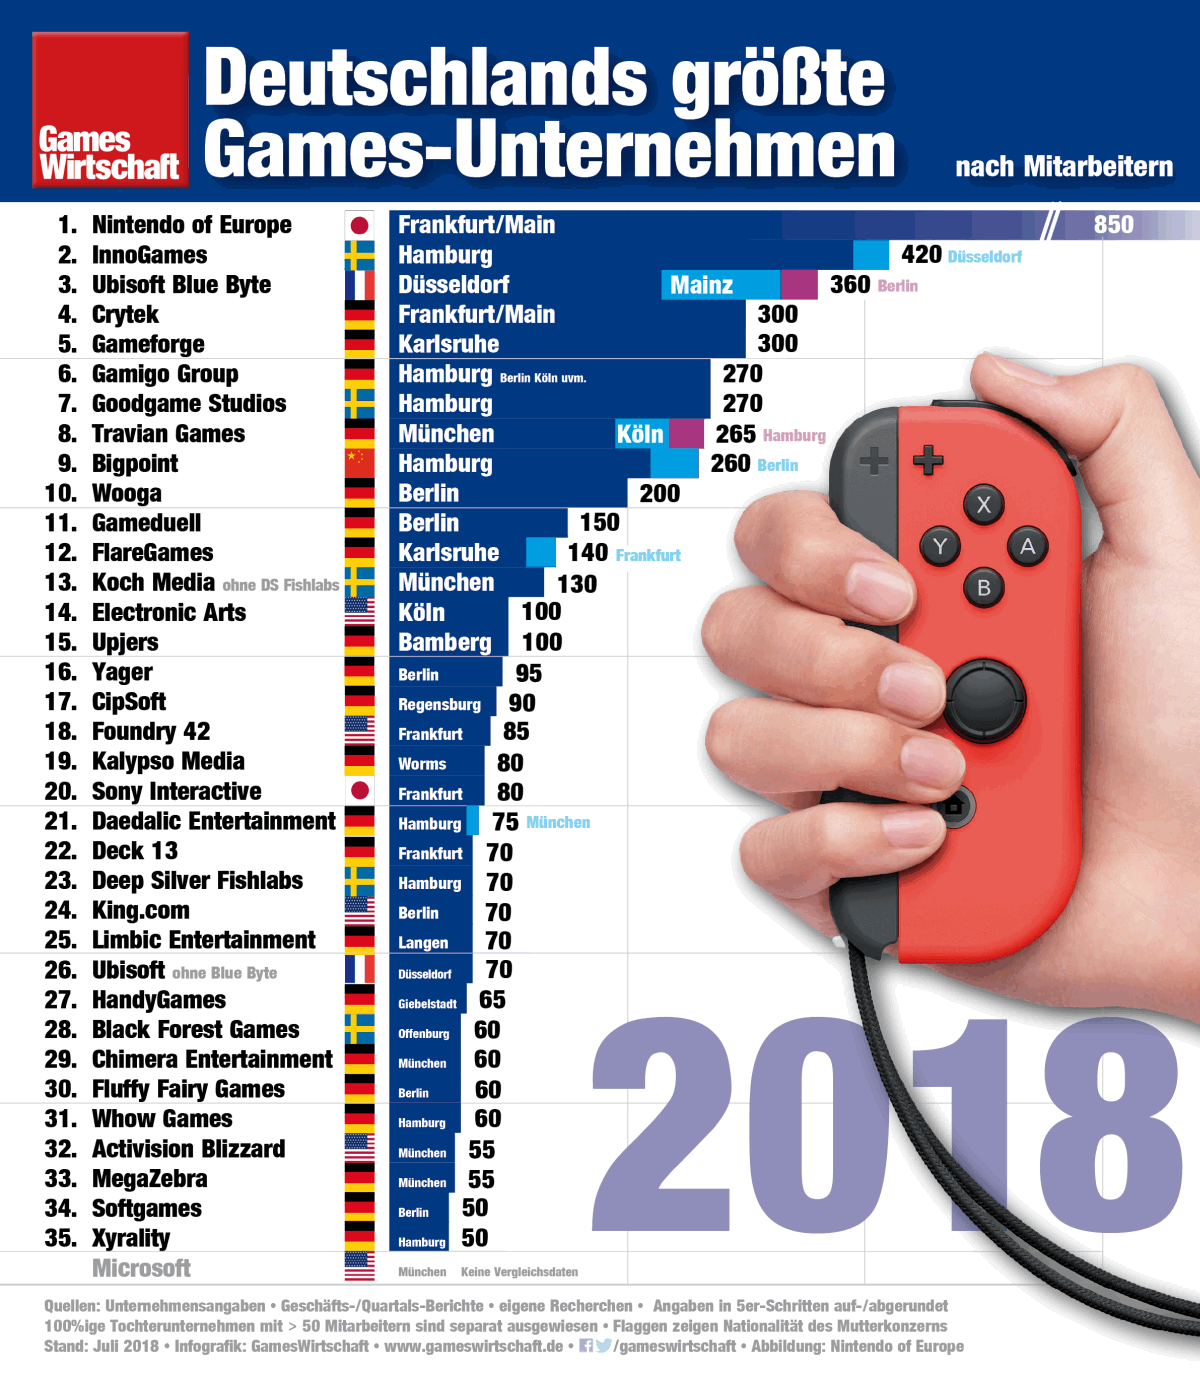 Die 35 größten Games-Unternehmen in Deutschland (v1 / Stand: Juli 2018)